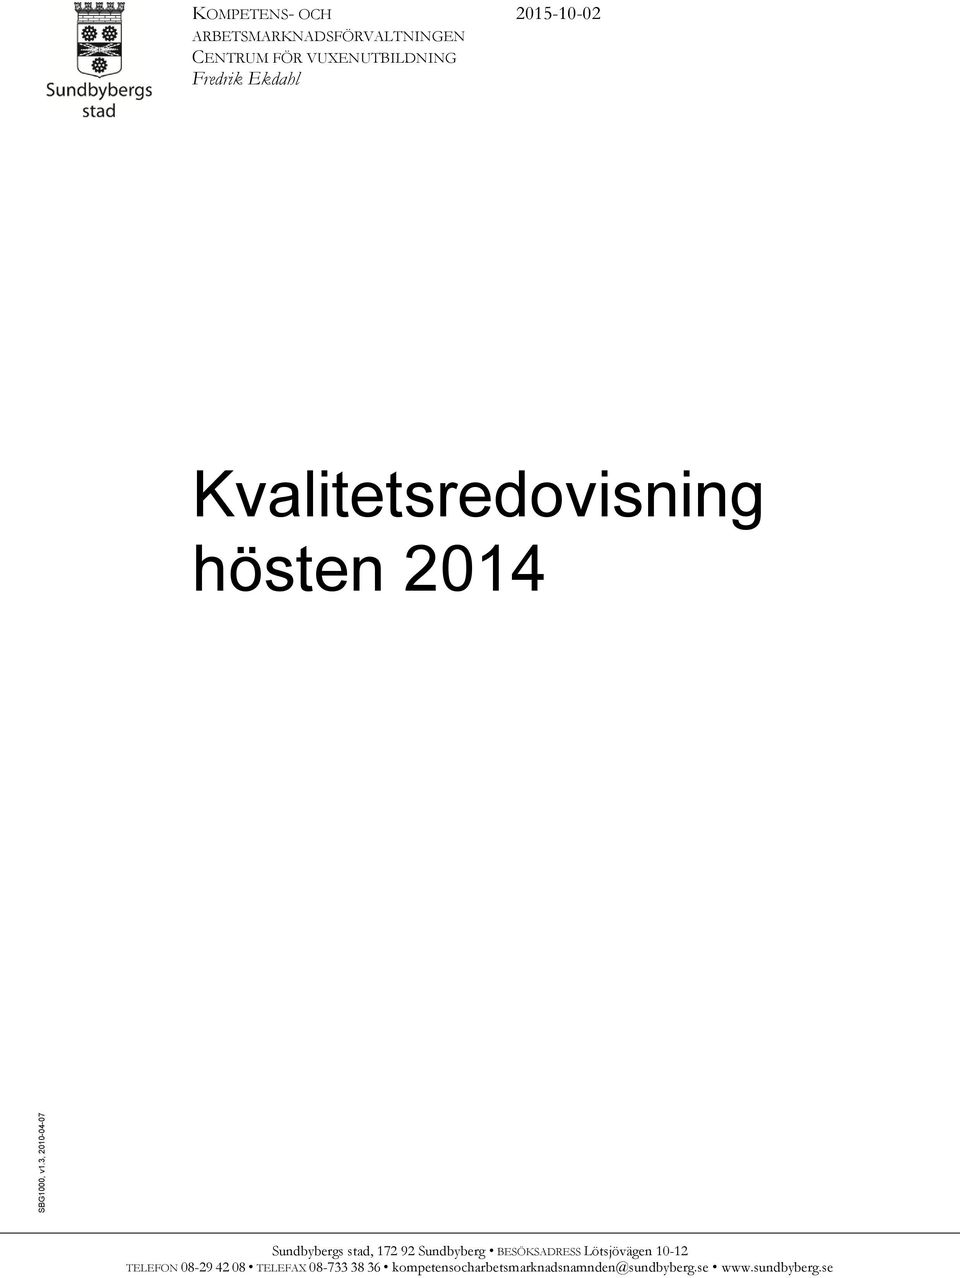 VUXENUTBILDNING Fredrik Ekdahl 2015-10-02 Kvalitetsredovisning hösten 2014